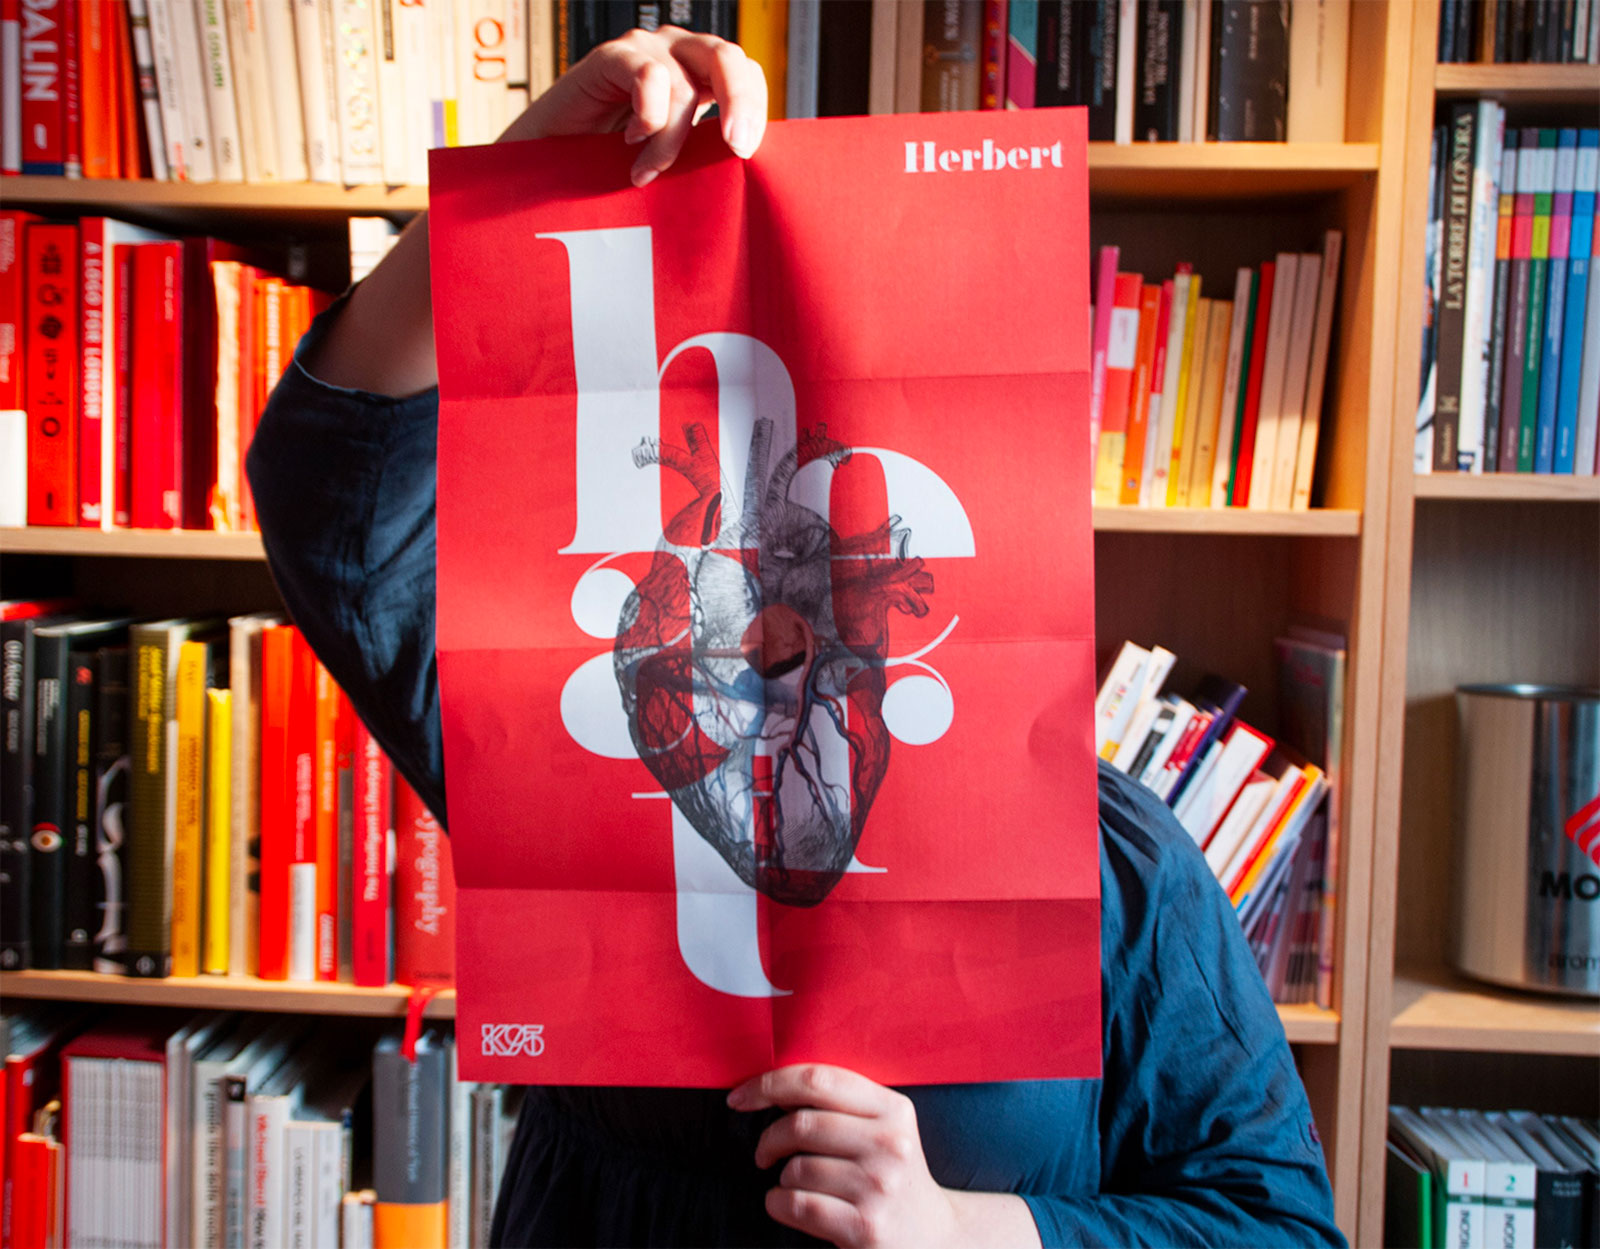 Herbert Typeface - Poster